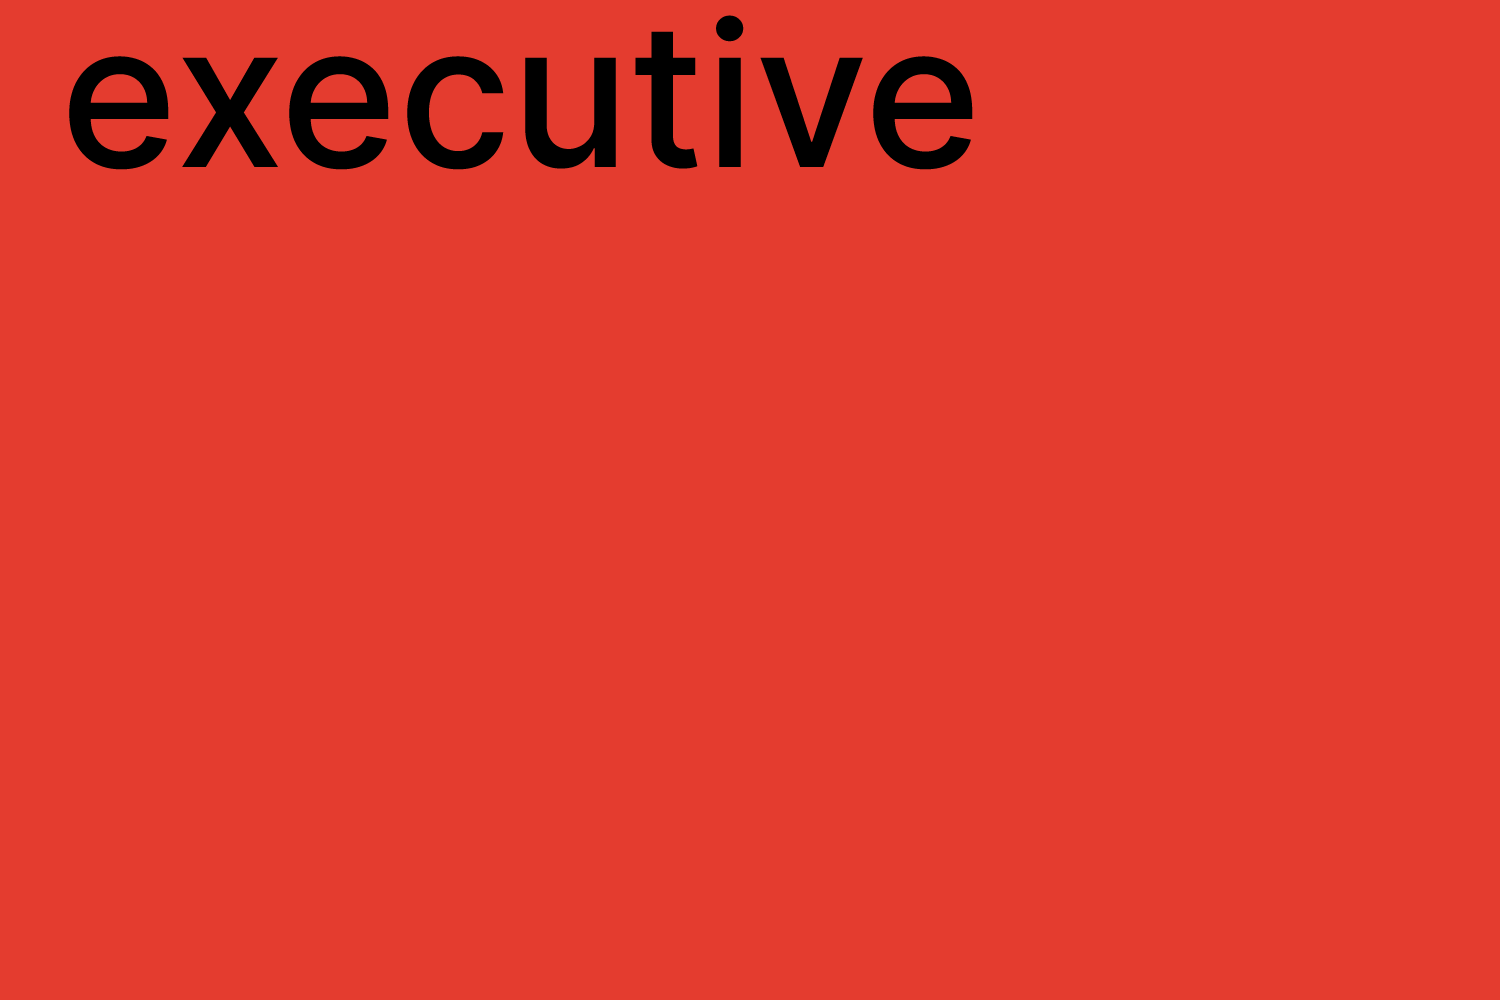 account executive